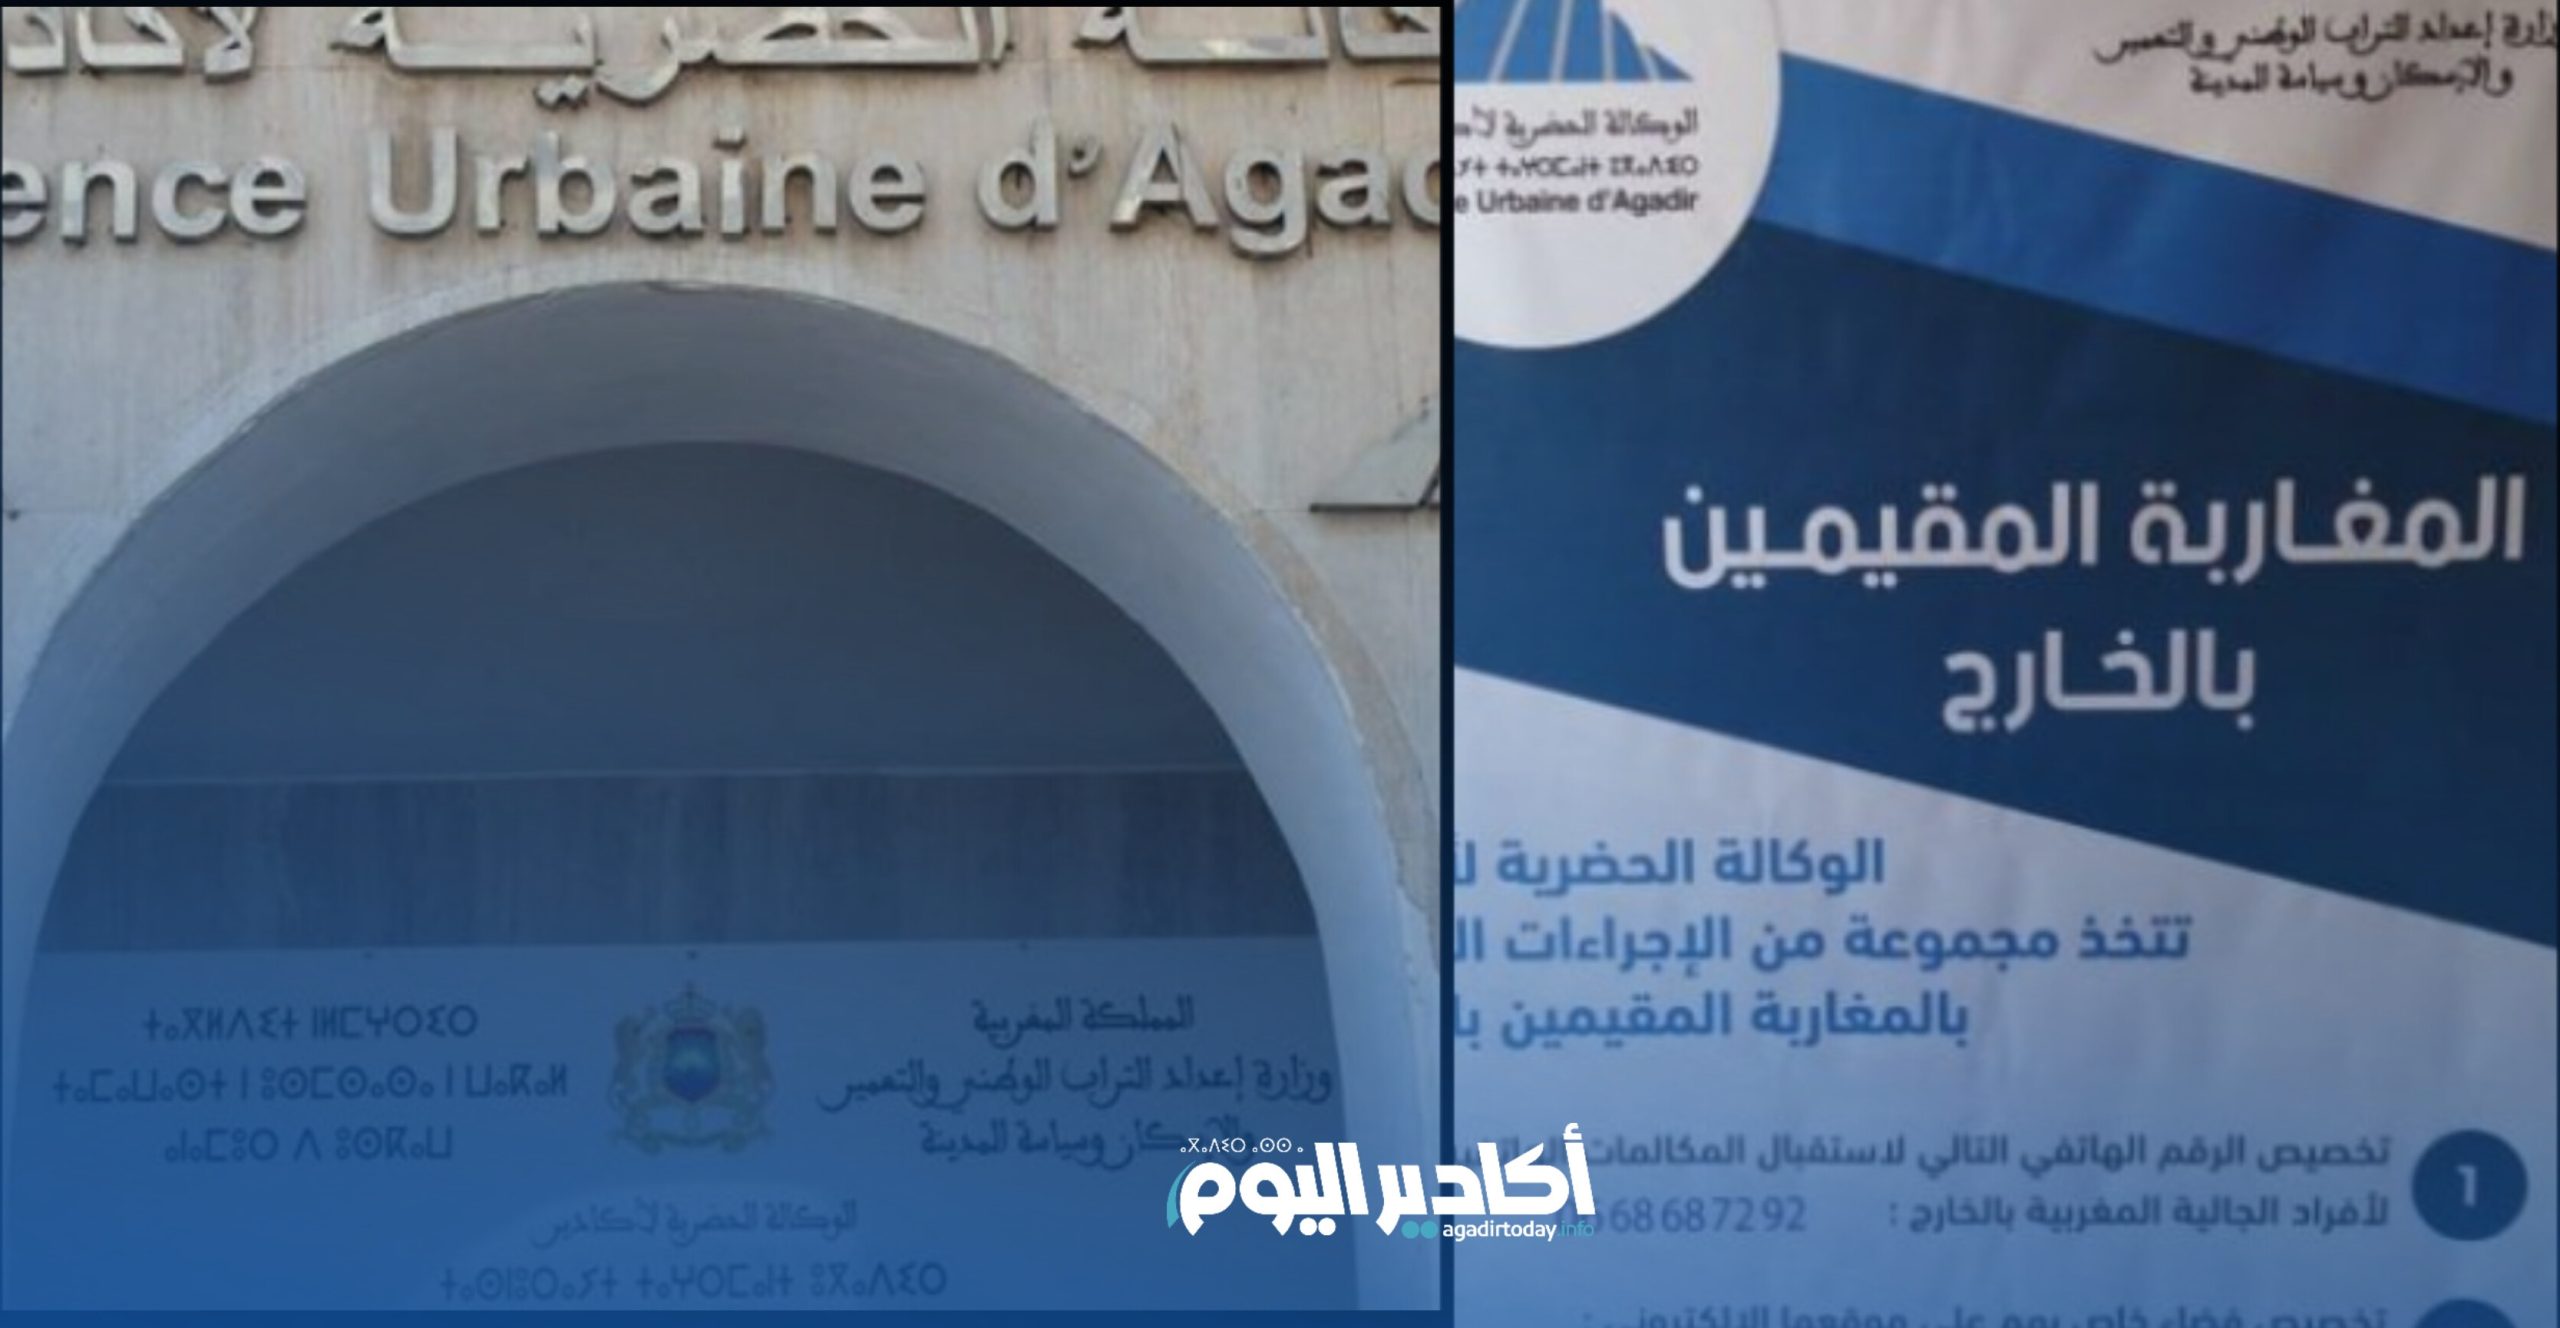 الوكالة الحضرية لأكاديرتعتمد مجموعة من الإجراءات العملية لمواكبة المقام الصيفي لمغاربة العالم - AgadirToday